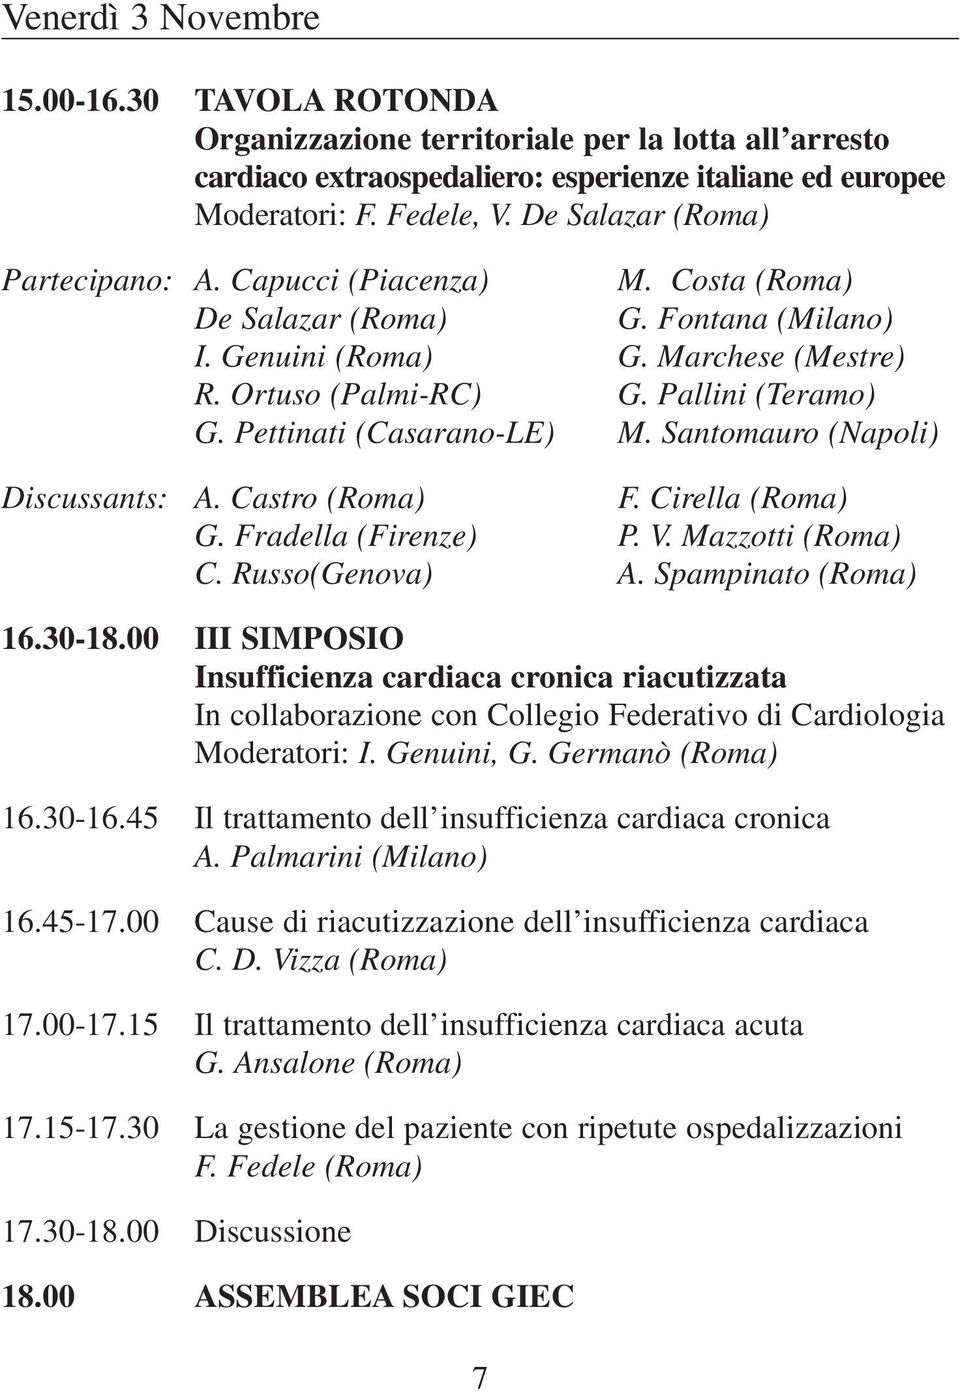 Pettinati (Casarano-LE) M. Santomauro (Napoli) Discussants: A. Castro (Roma) F. Cirella (Roma) G. Fradella (Firenze) P. V. Mazzotti (Roma) C. Russo(Genova) A. Spampinato (Roma) 16.30-18.